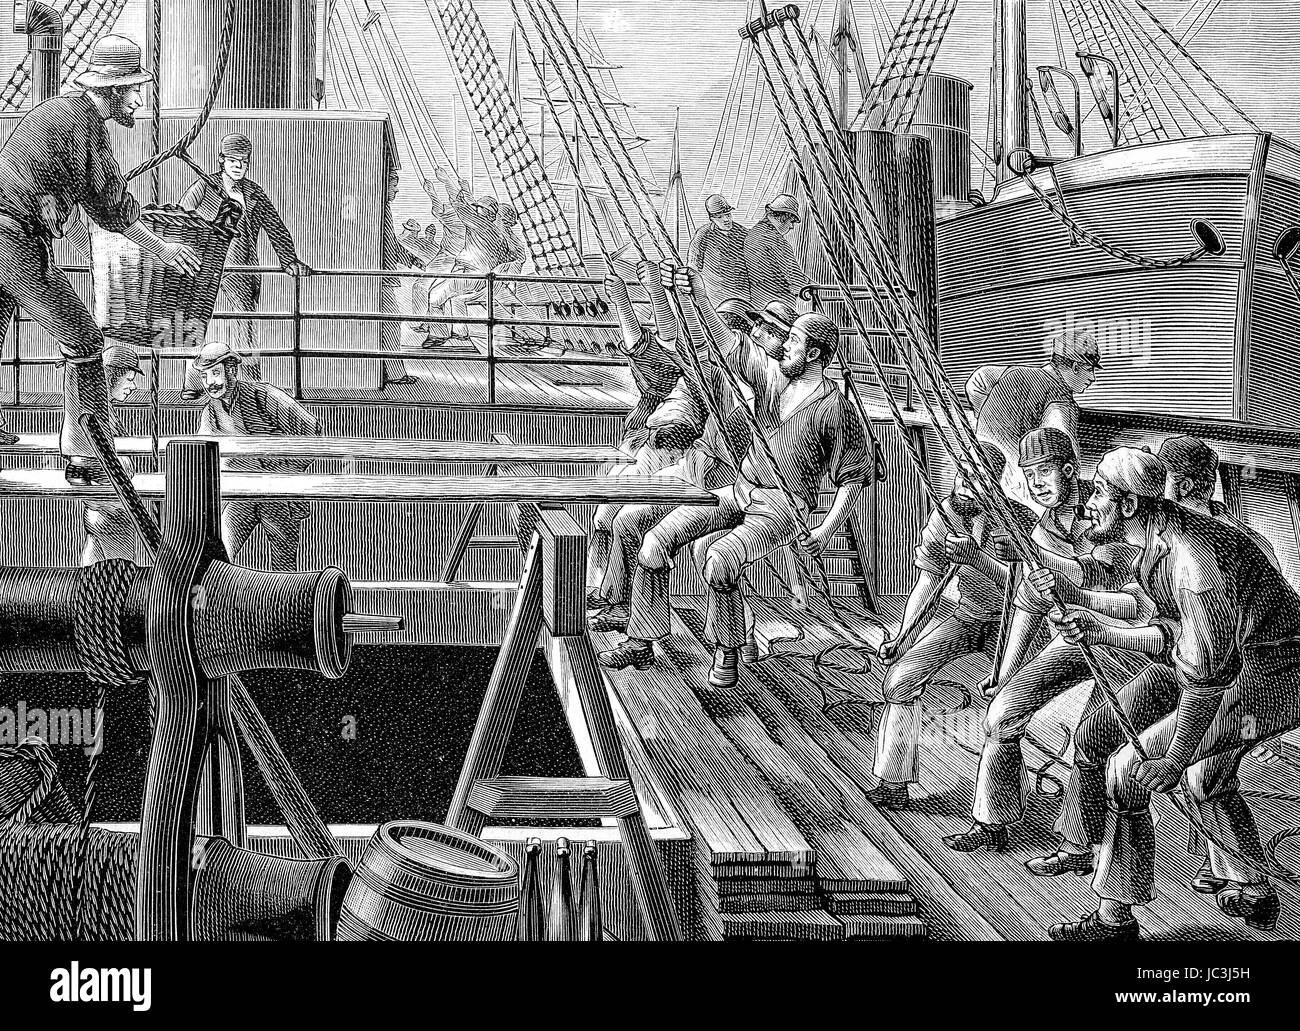 Transport von Kohle, das Laden von Kohle auf die Kohle Schiffe im Hamburger Hafen, digital verbesserte Wiedergabe aus einer Publikation des Jahres 1880 Stockfoto